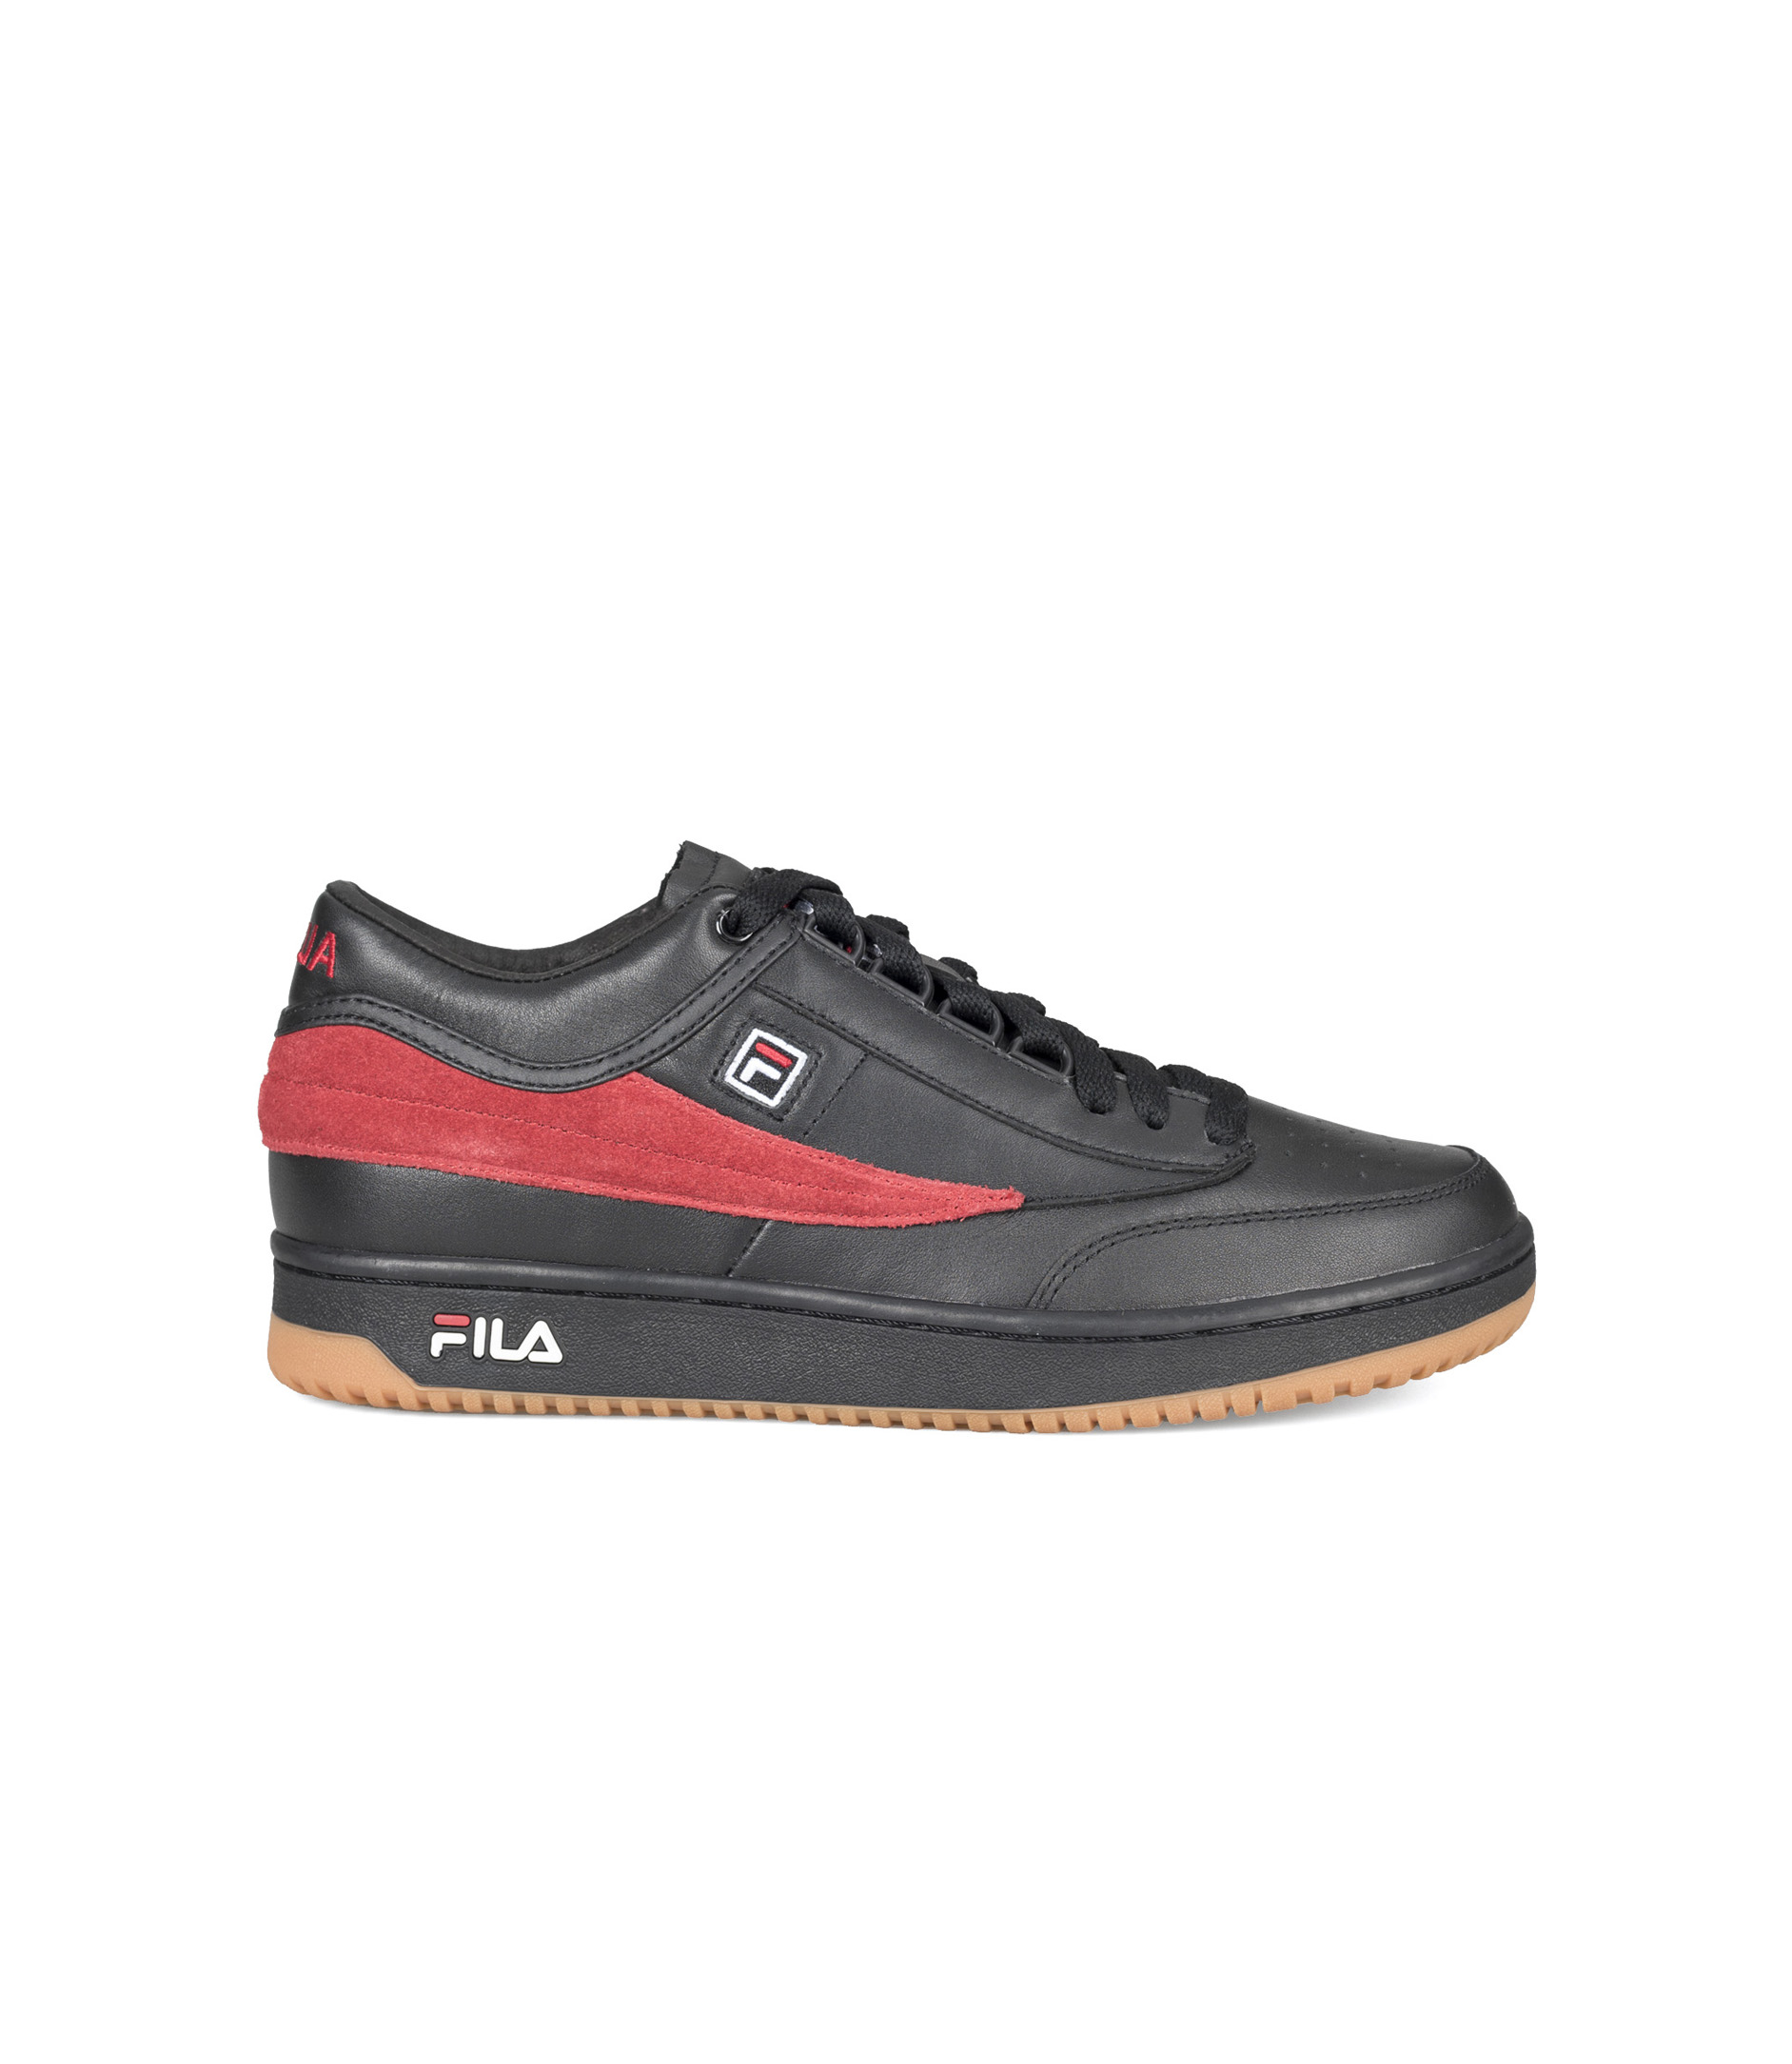 laden ziek Pigment Shop Gosha Rubchinskiy x Fila T-1 Mid Sneakers Black/Red at itk online store